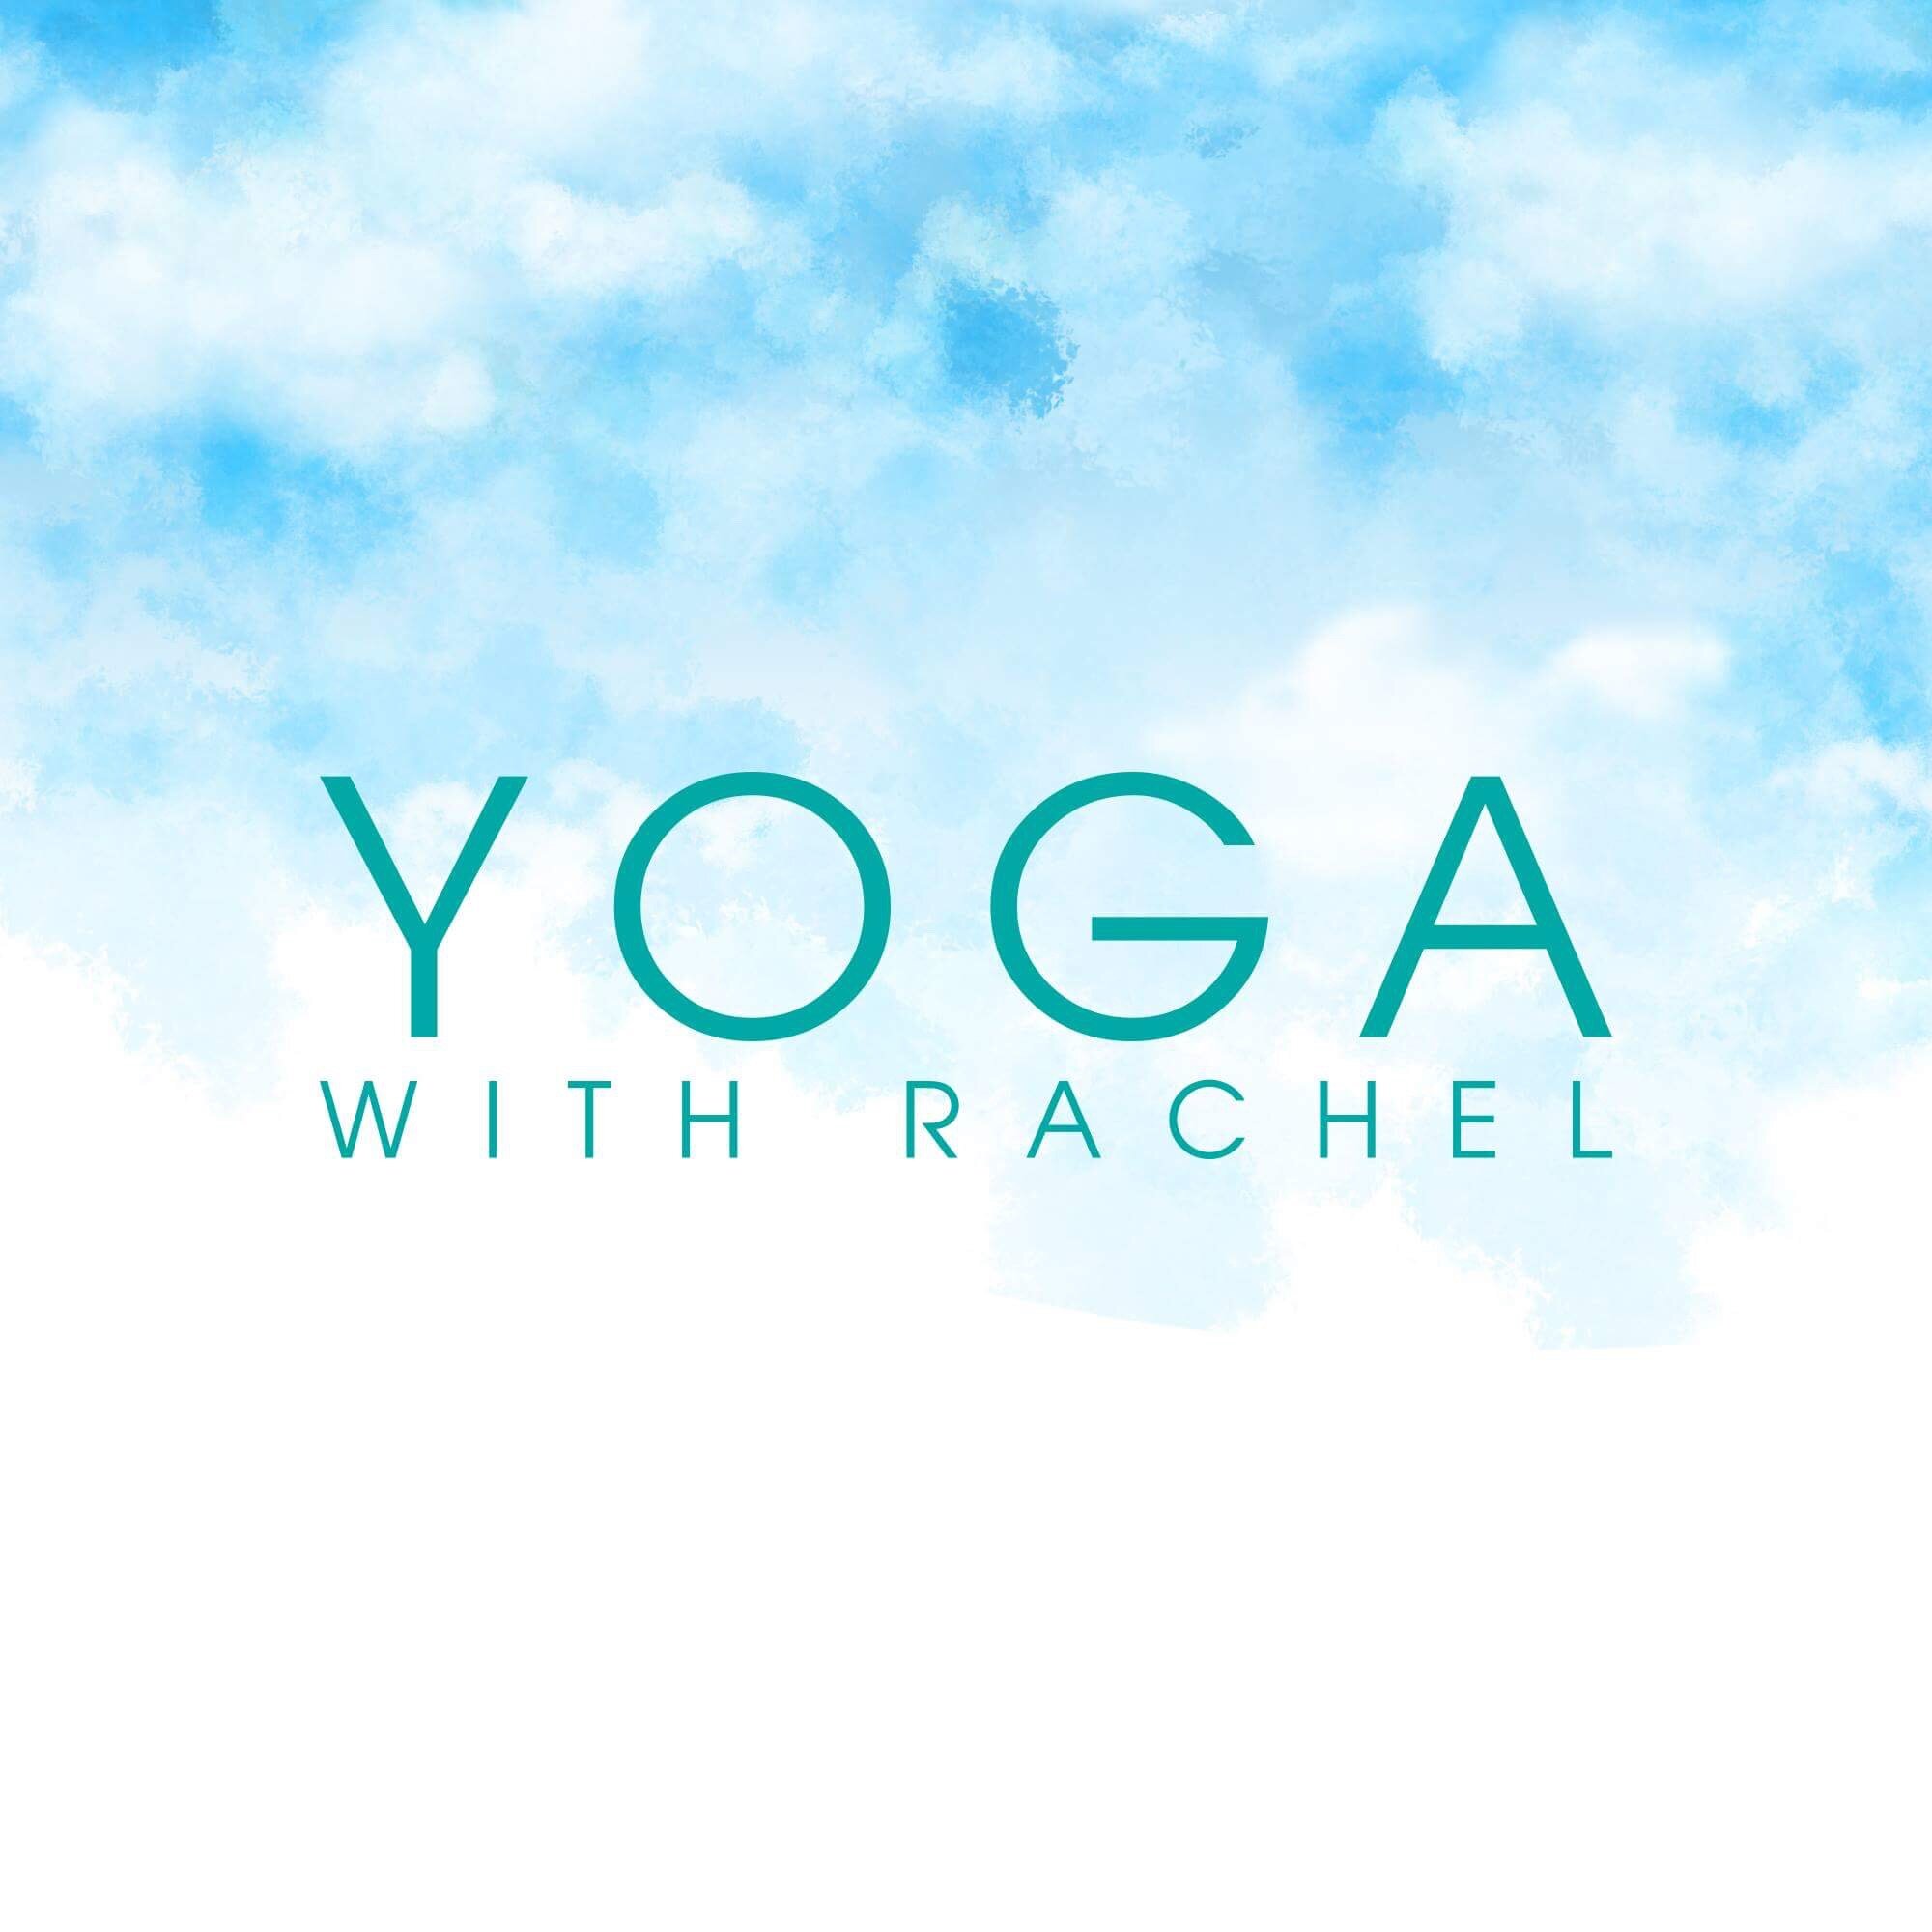 Yoga with Rachel